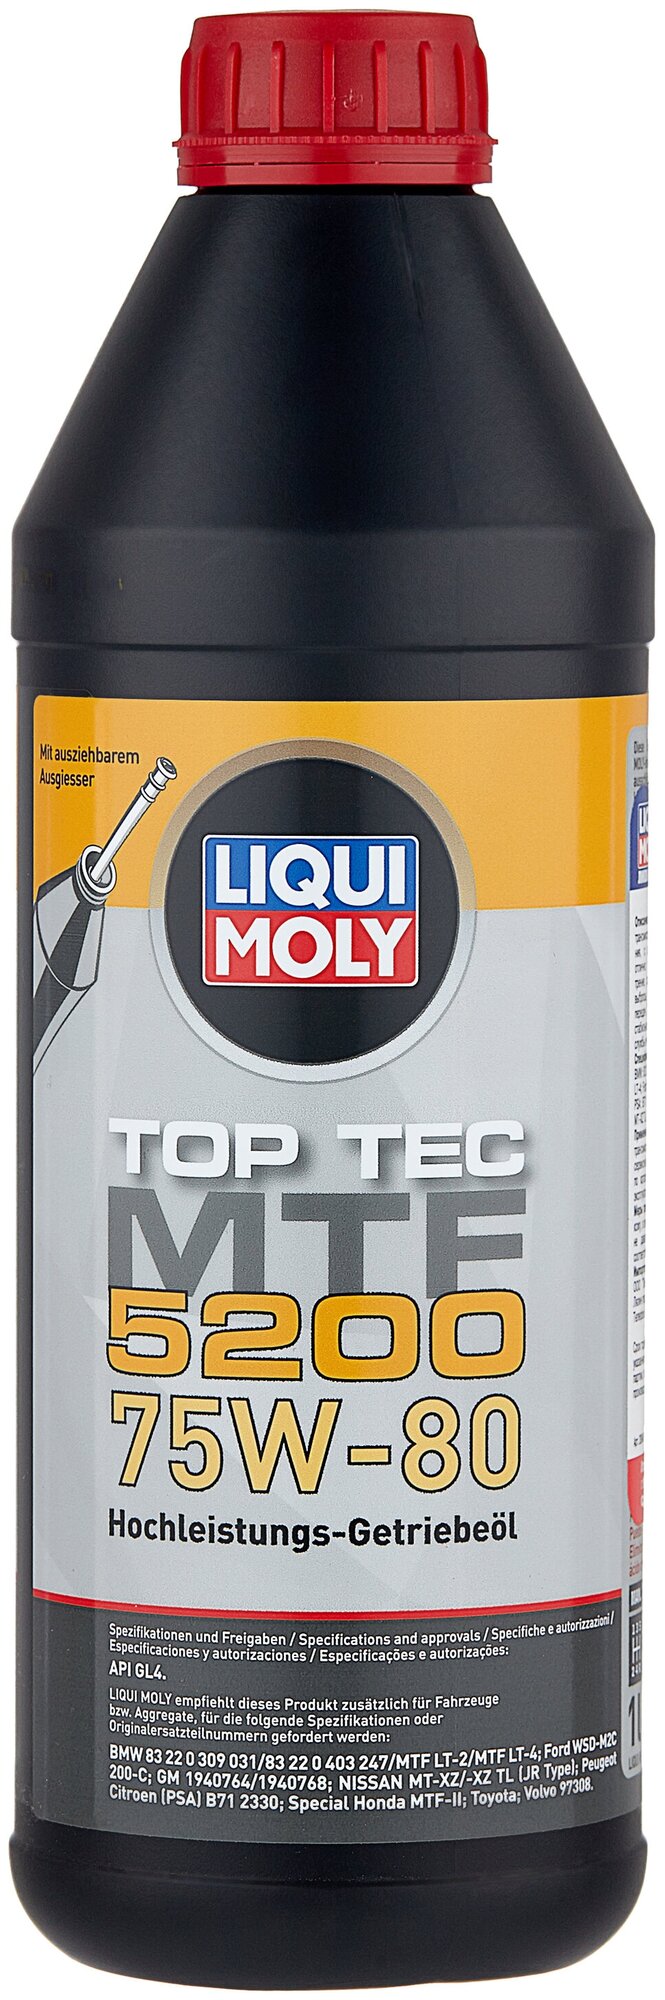 Масло трансмиссионное LIQUI MOLY Top Tec MTF 5200 75W-80